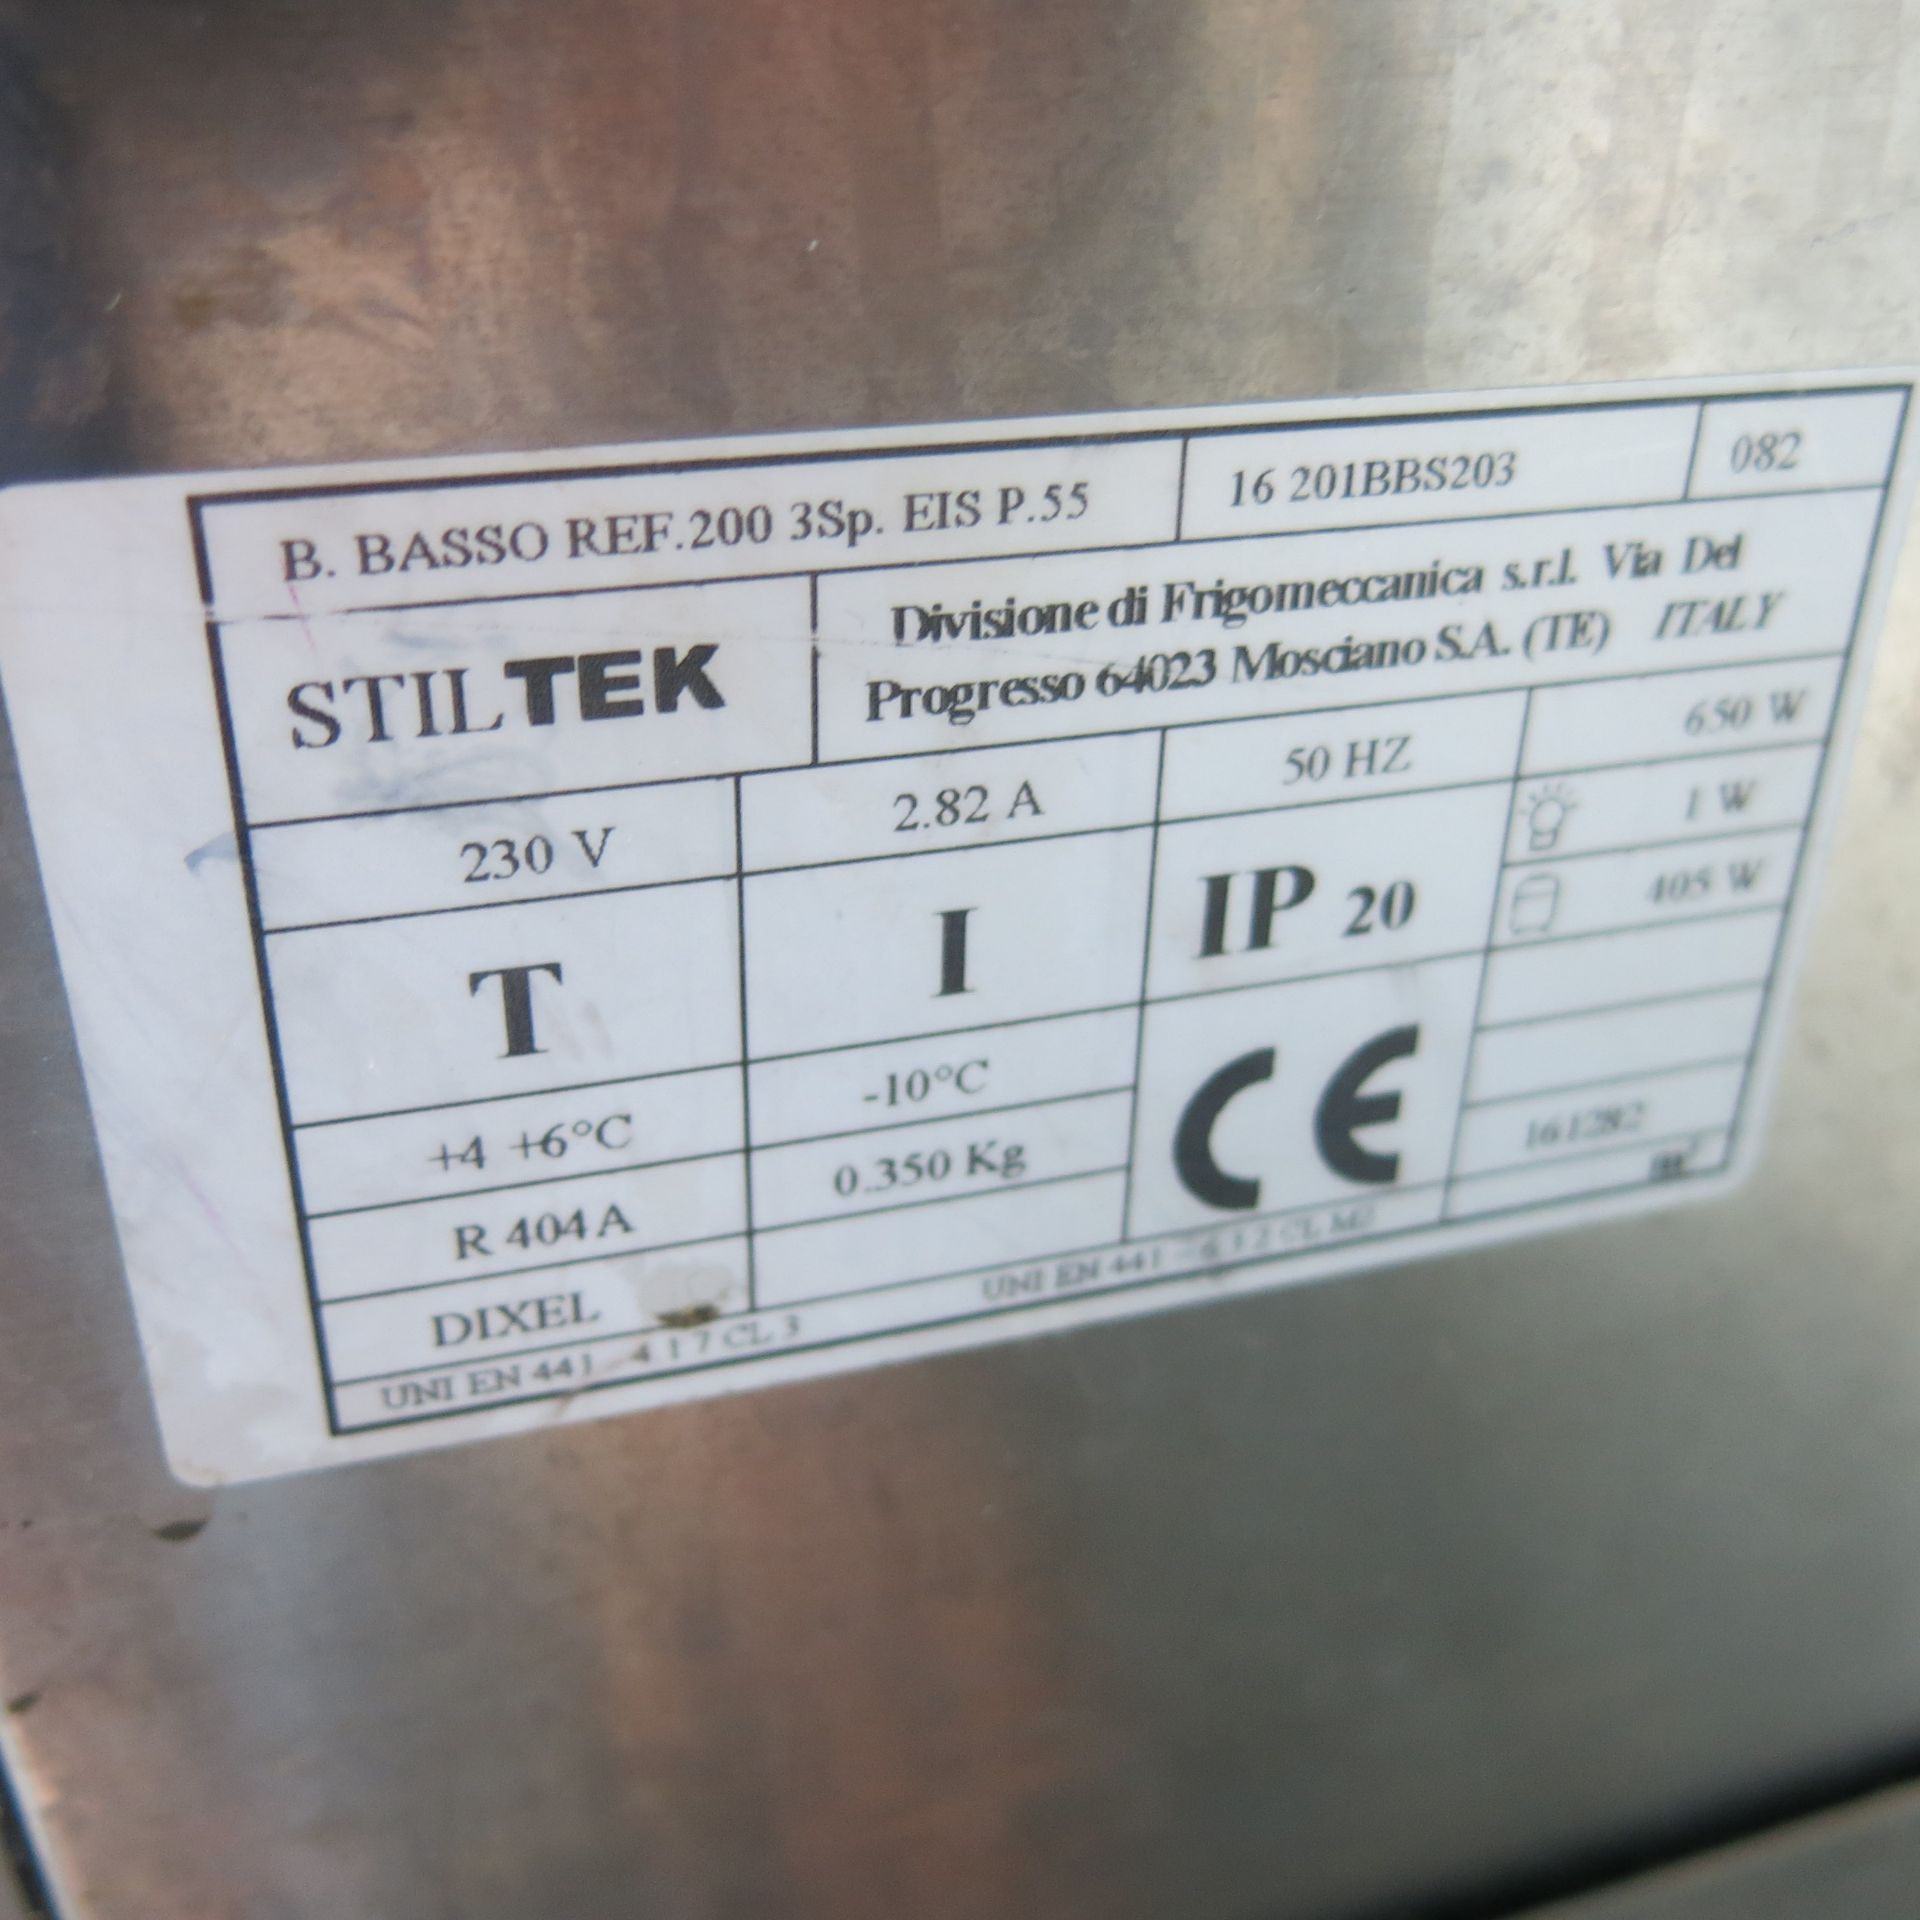 Stiltek 3 Door Polished Stainless Steel Under Bar Chiller Unit, Model B.BASSO 2003SPEISP55. Size ( - Image 7 of 9